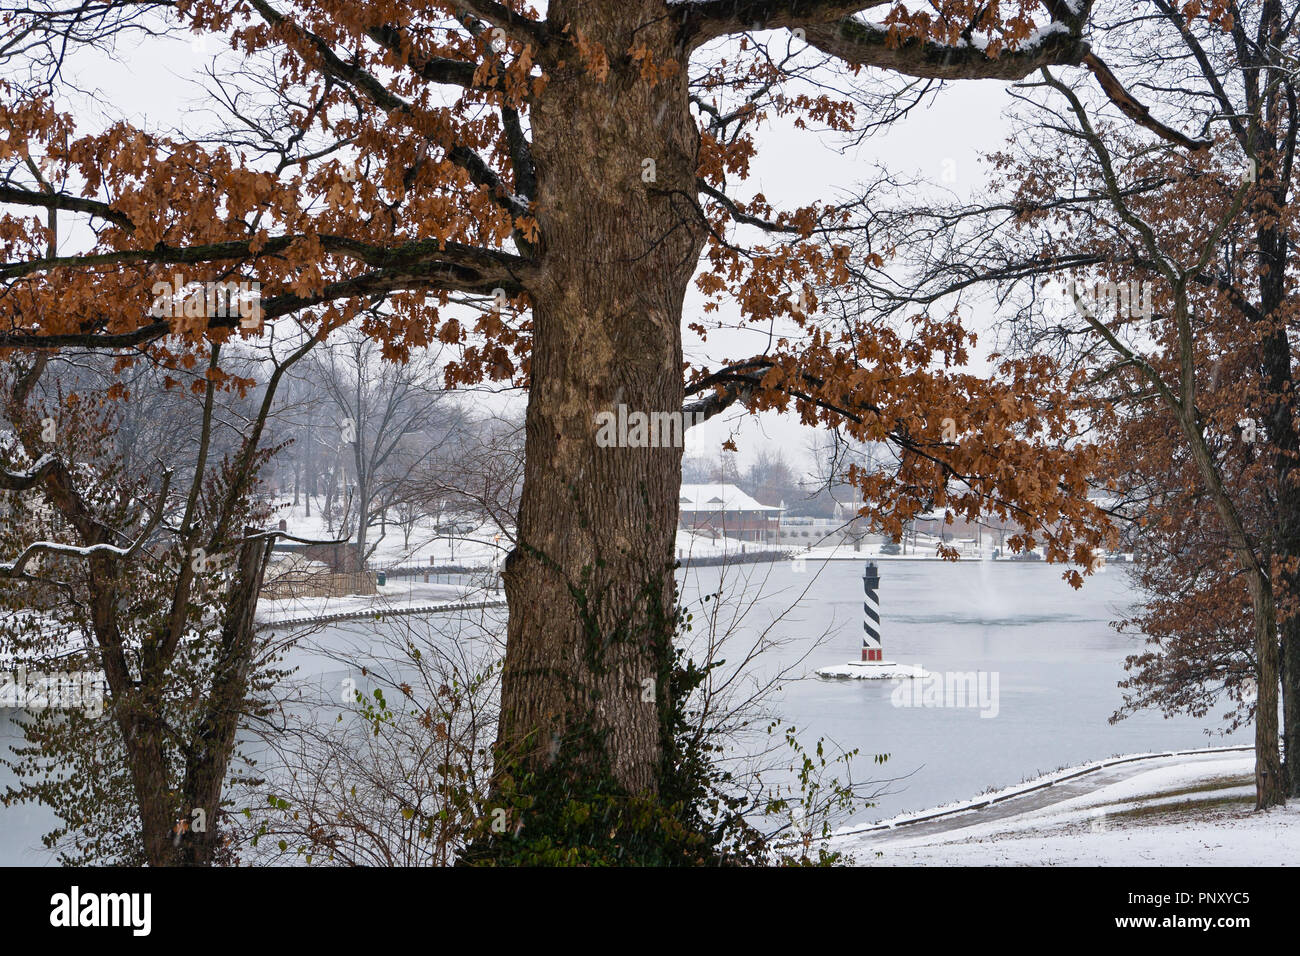 La neve cade su un albero di quercia vestita in rosso-marrone fogliame invernale a January-Wabash Park di Ferguson, Missouri, con il parco del lago e del faro in Foto Stock